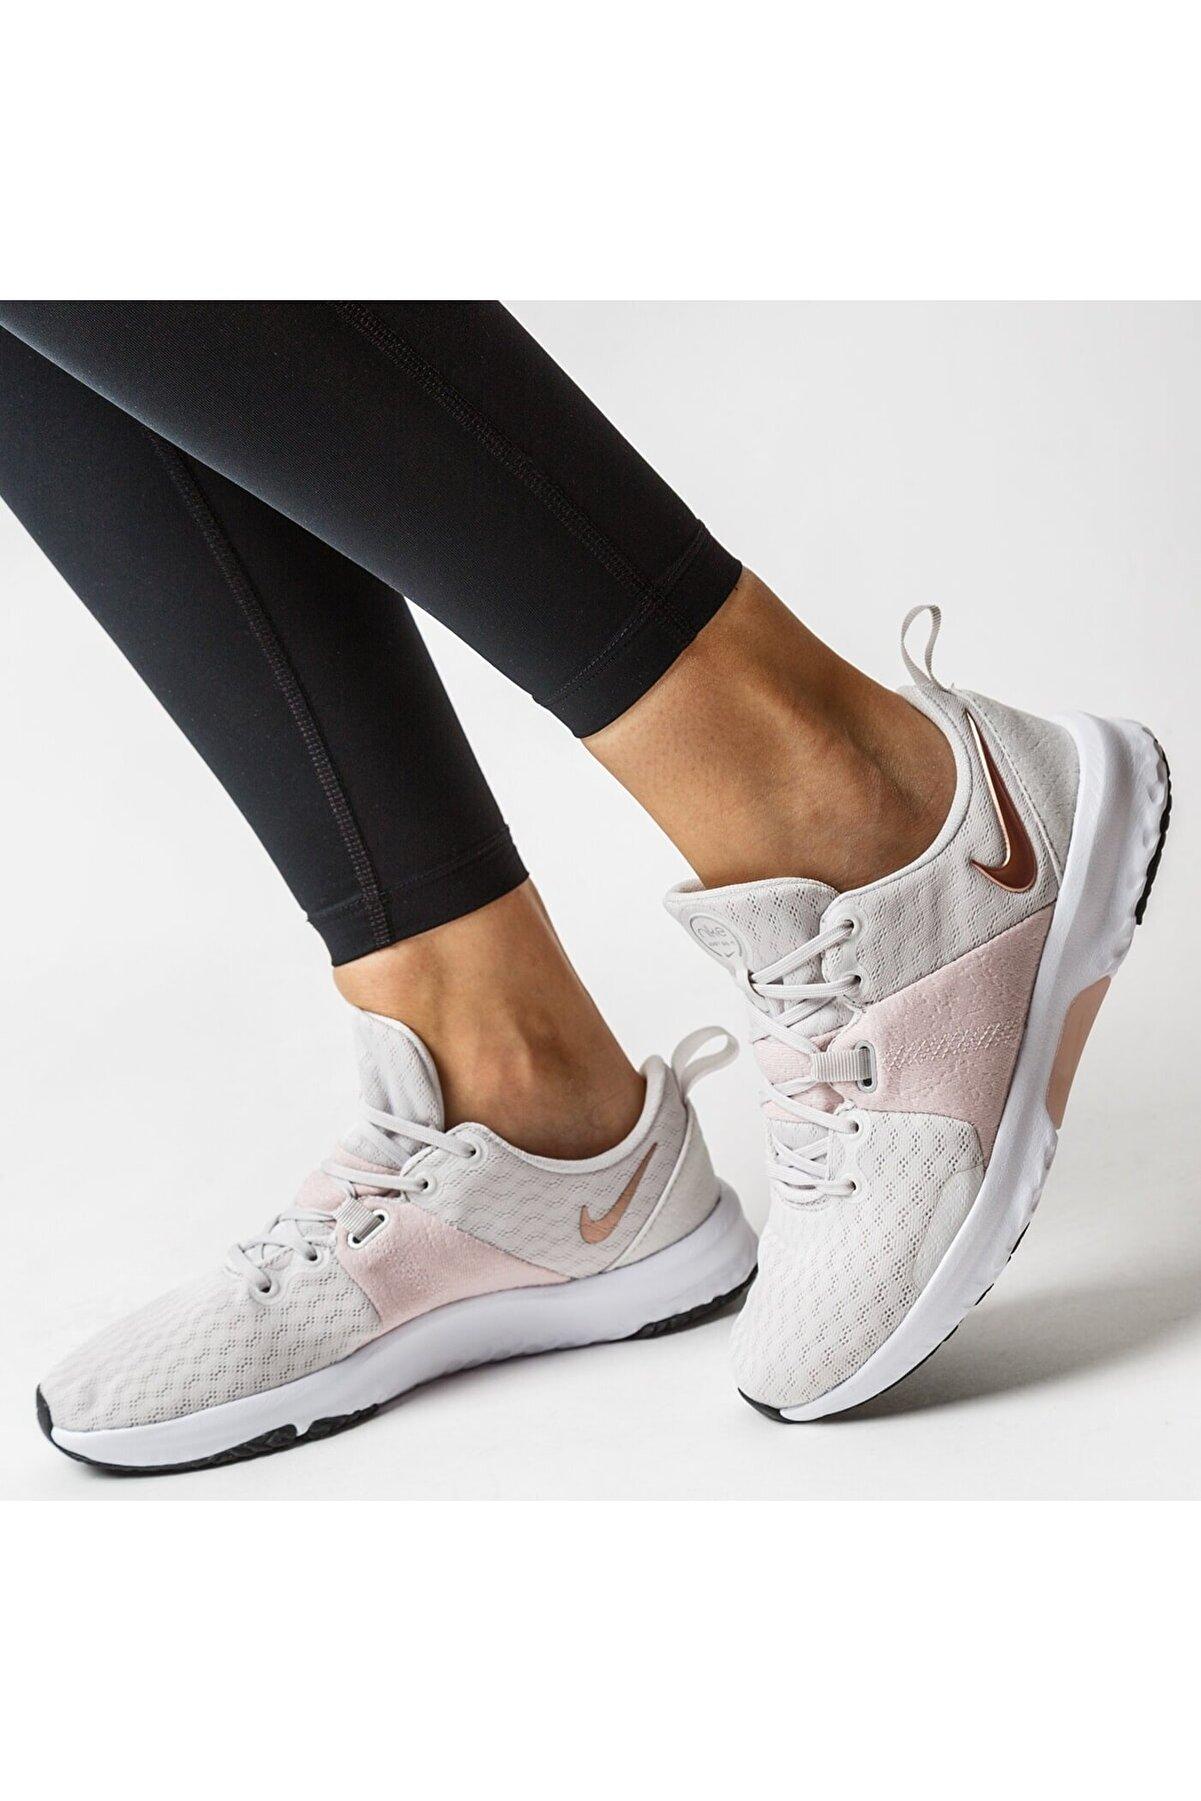 Nike Wmns City Trainer 3 Lila Kadın Yürüyüş Ayakkabı Ck2585-501